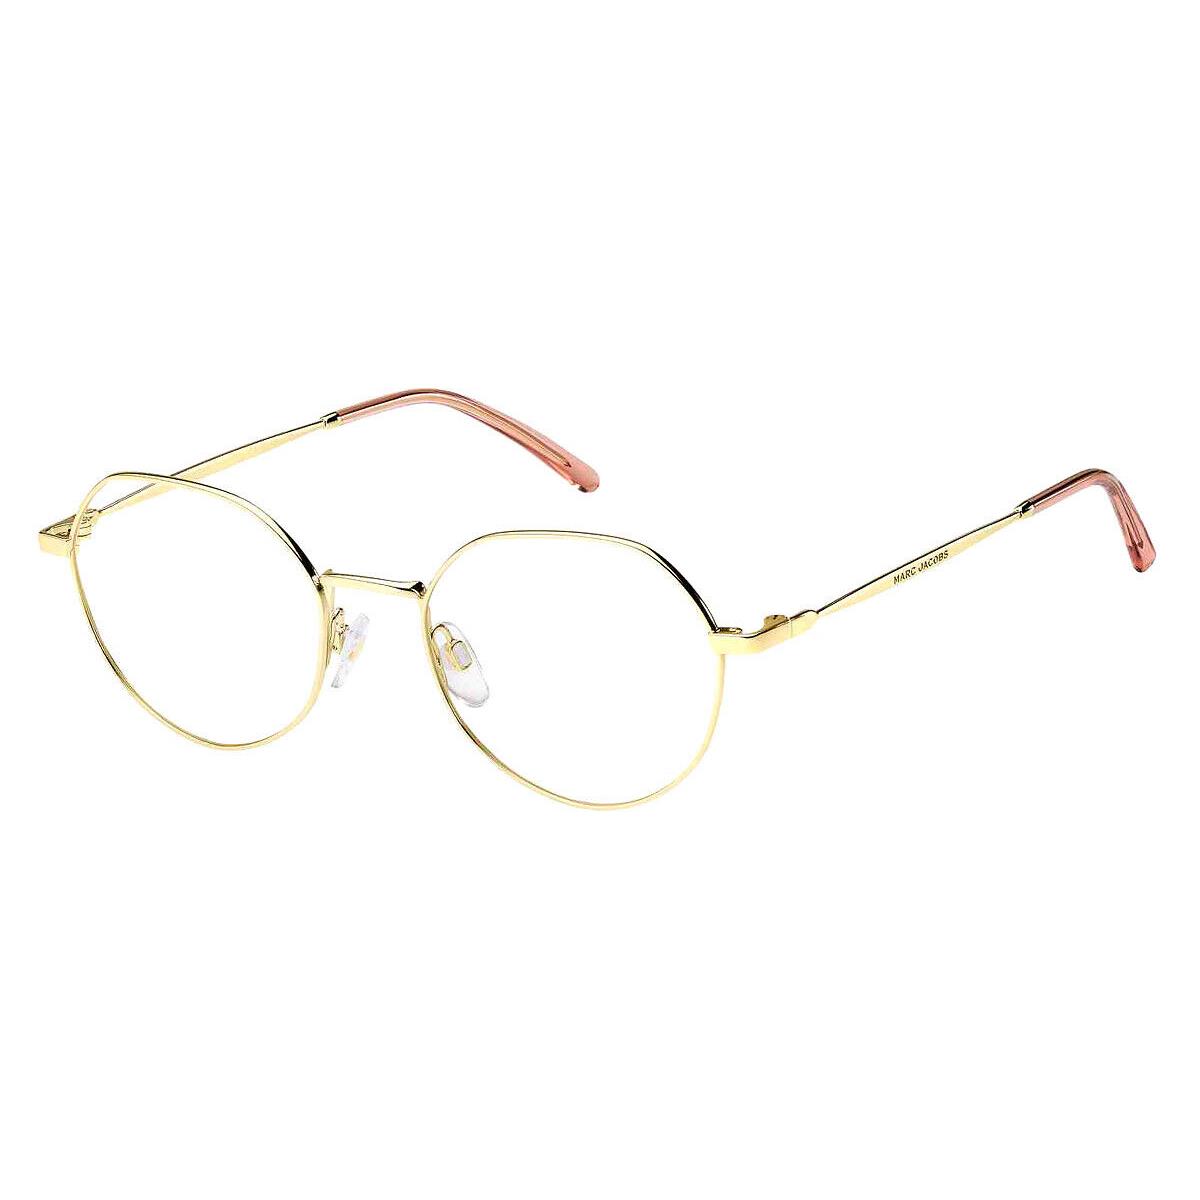 Marc Jacobs Mjb Eyeglasses Women Gold 51mm - Frame: Gold, Lens: Demo